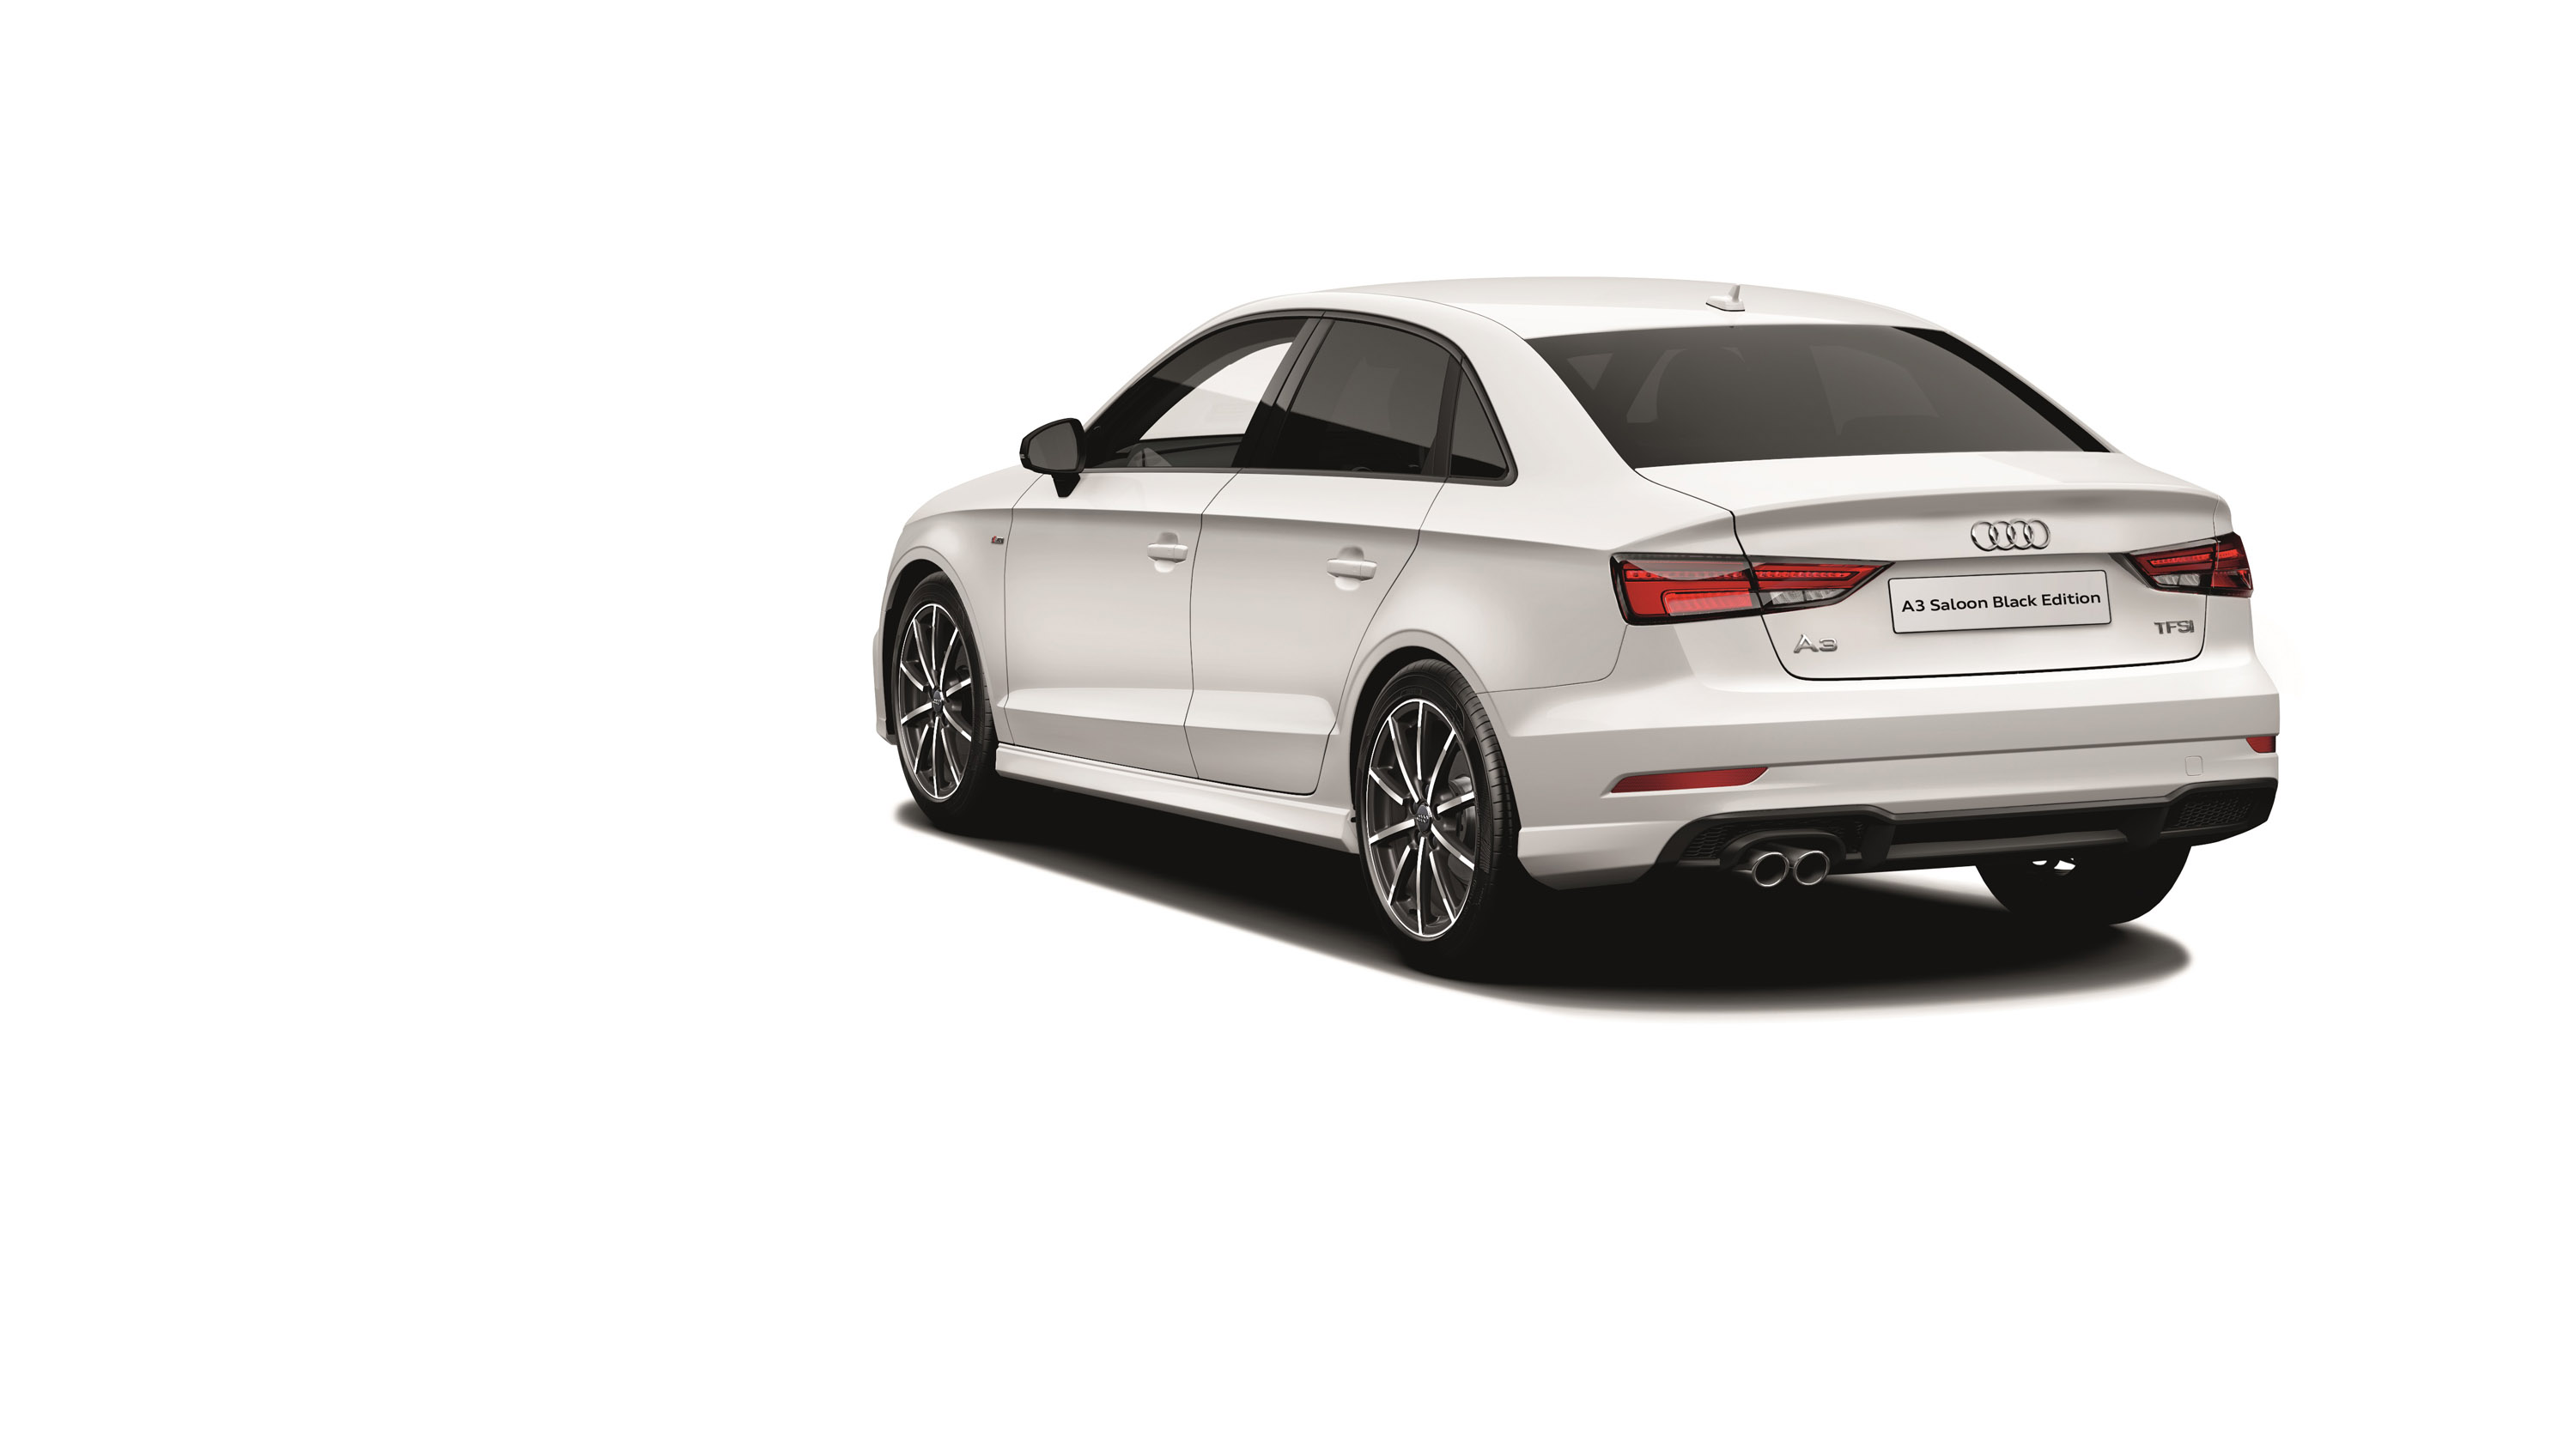 Audi представил новые модели Black Edition, которые в ближайшее время появятся на рынке